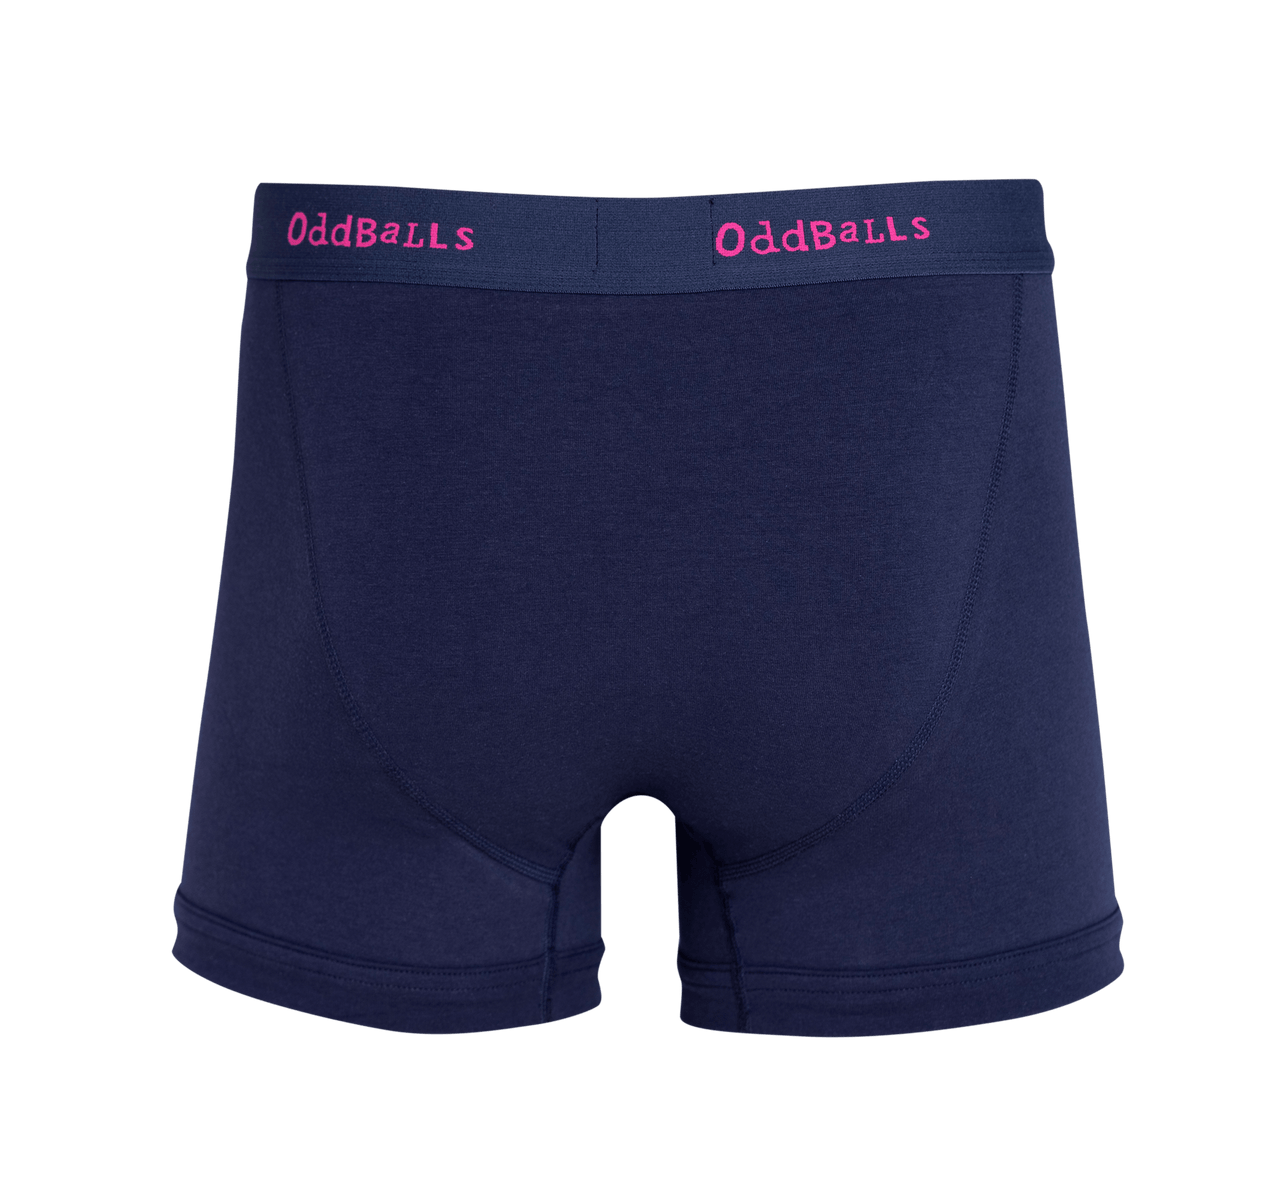 Navy & Magenta - Mens Boxer Shorts – OddBalls